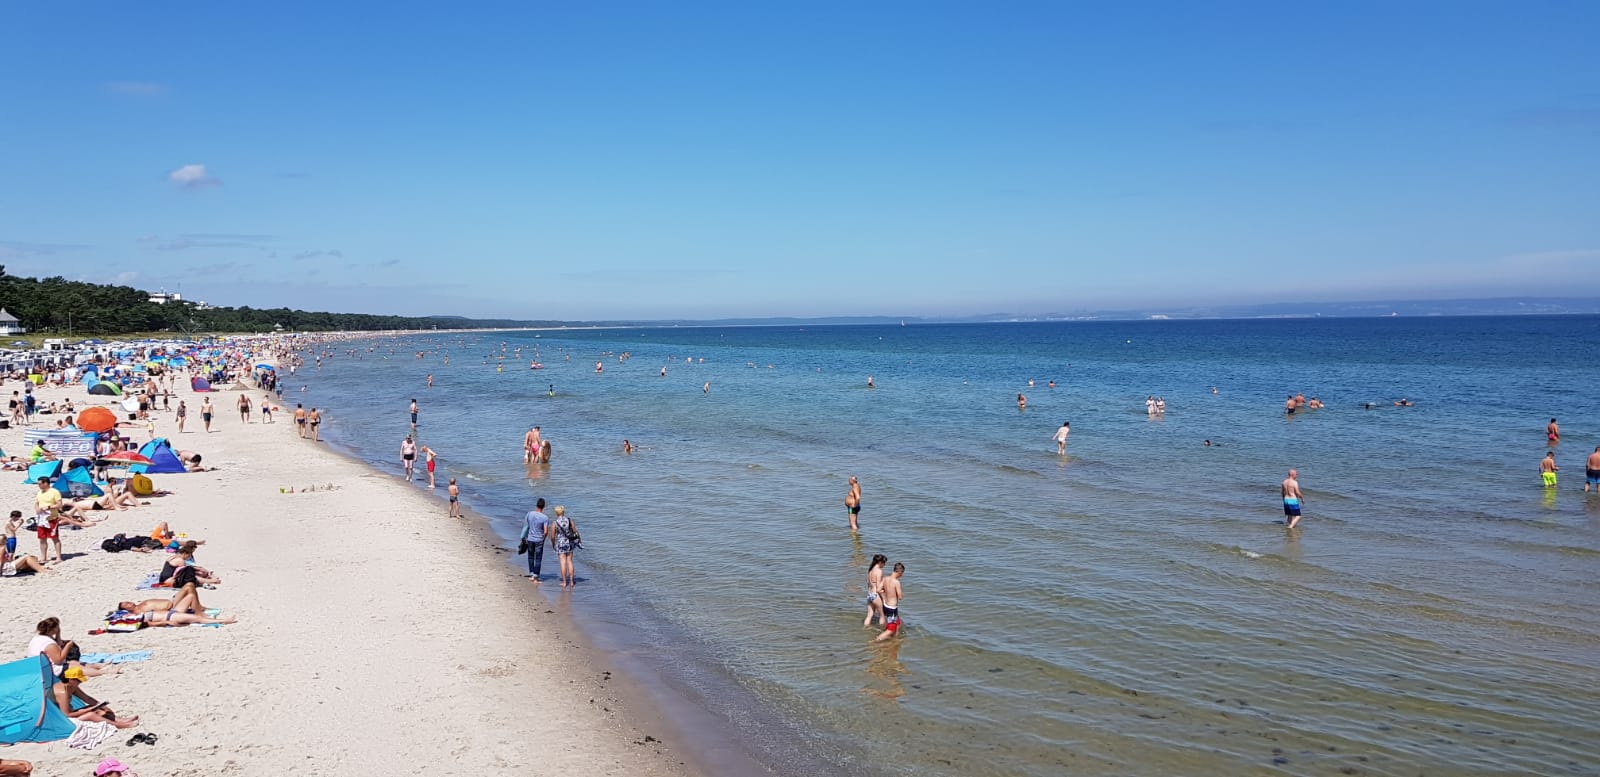 Binzer Plajı'in fotoğrafı çok temiz temizlik seviyesi ile